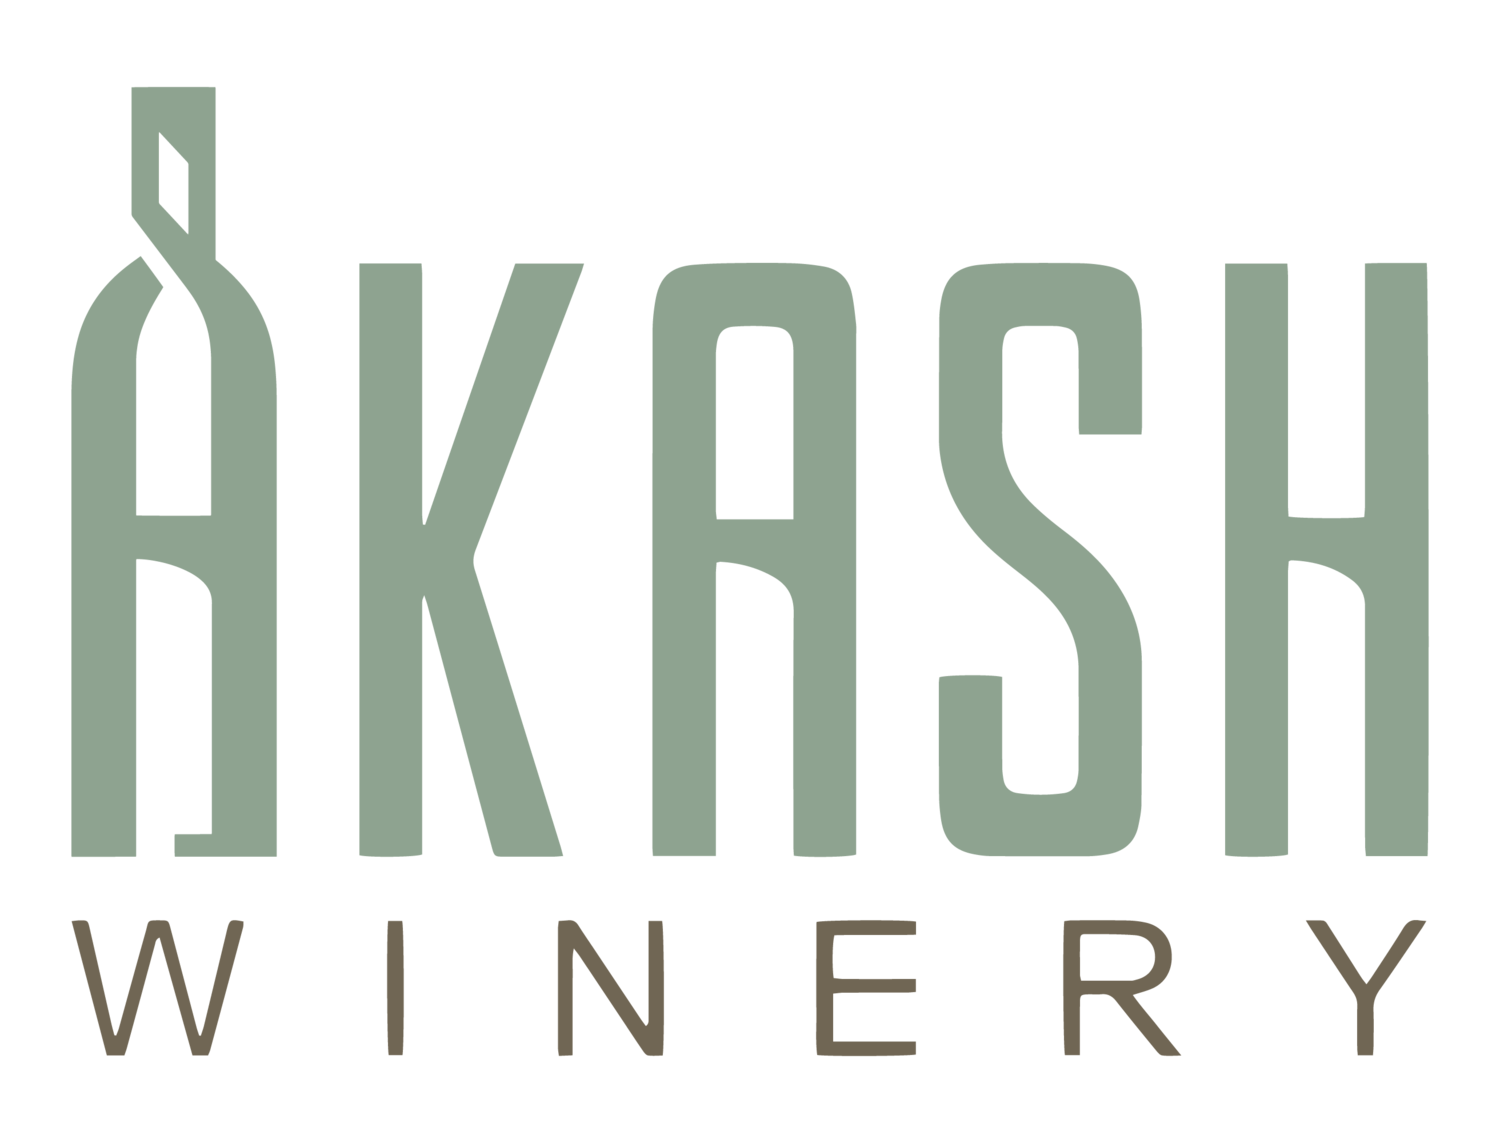 Akash Winery